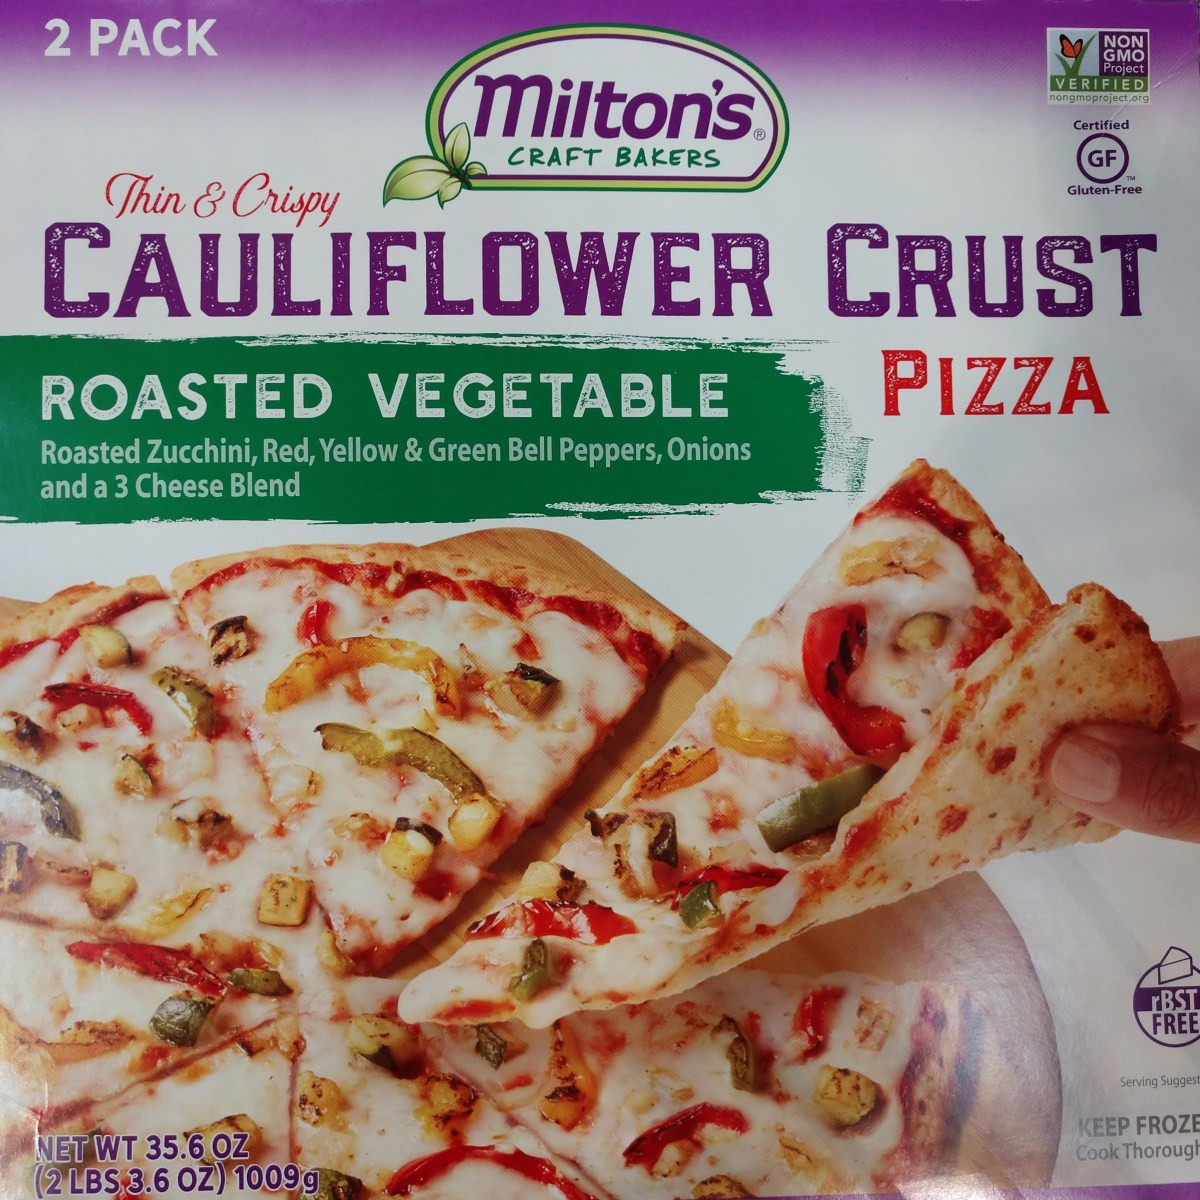 Frozen Cauliflower Pizza
 Milton’s Craft Bakers Cauliflower Pizza – Gluten